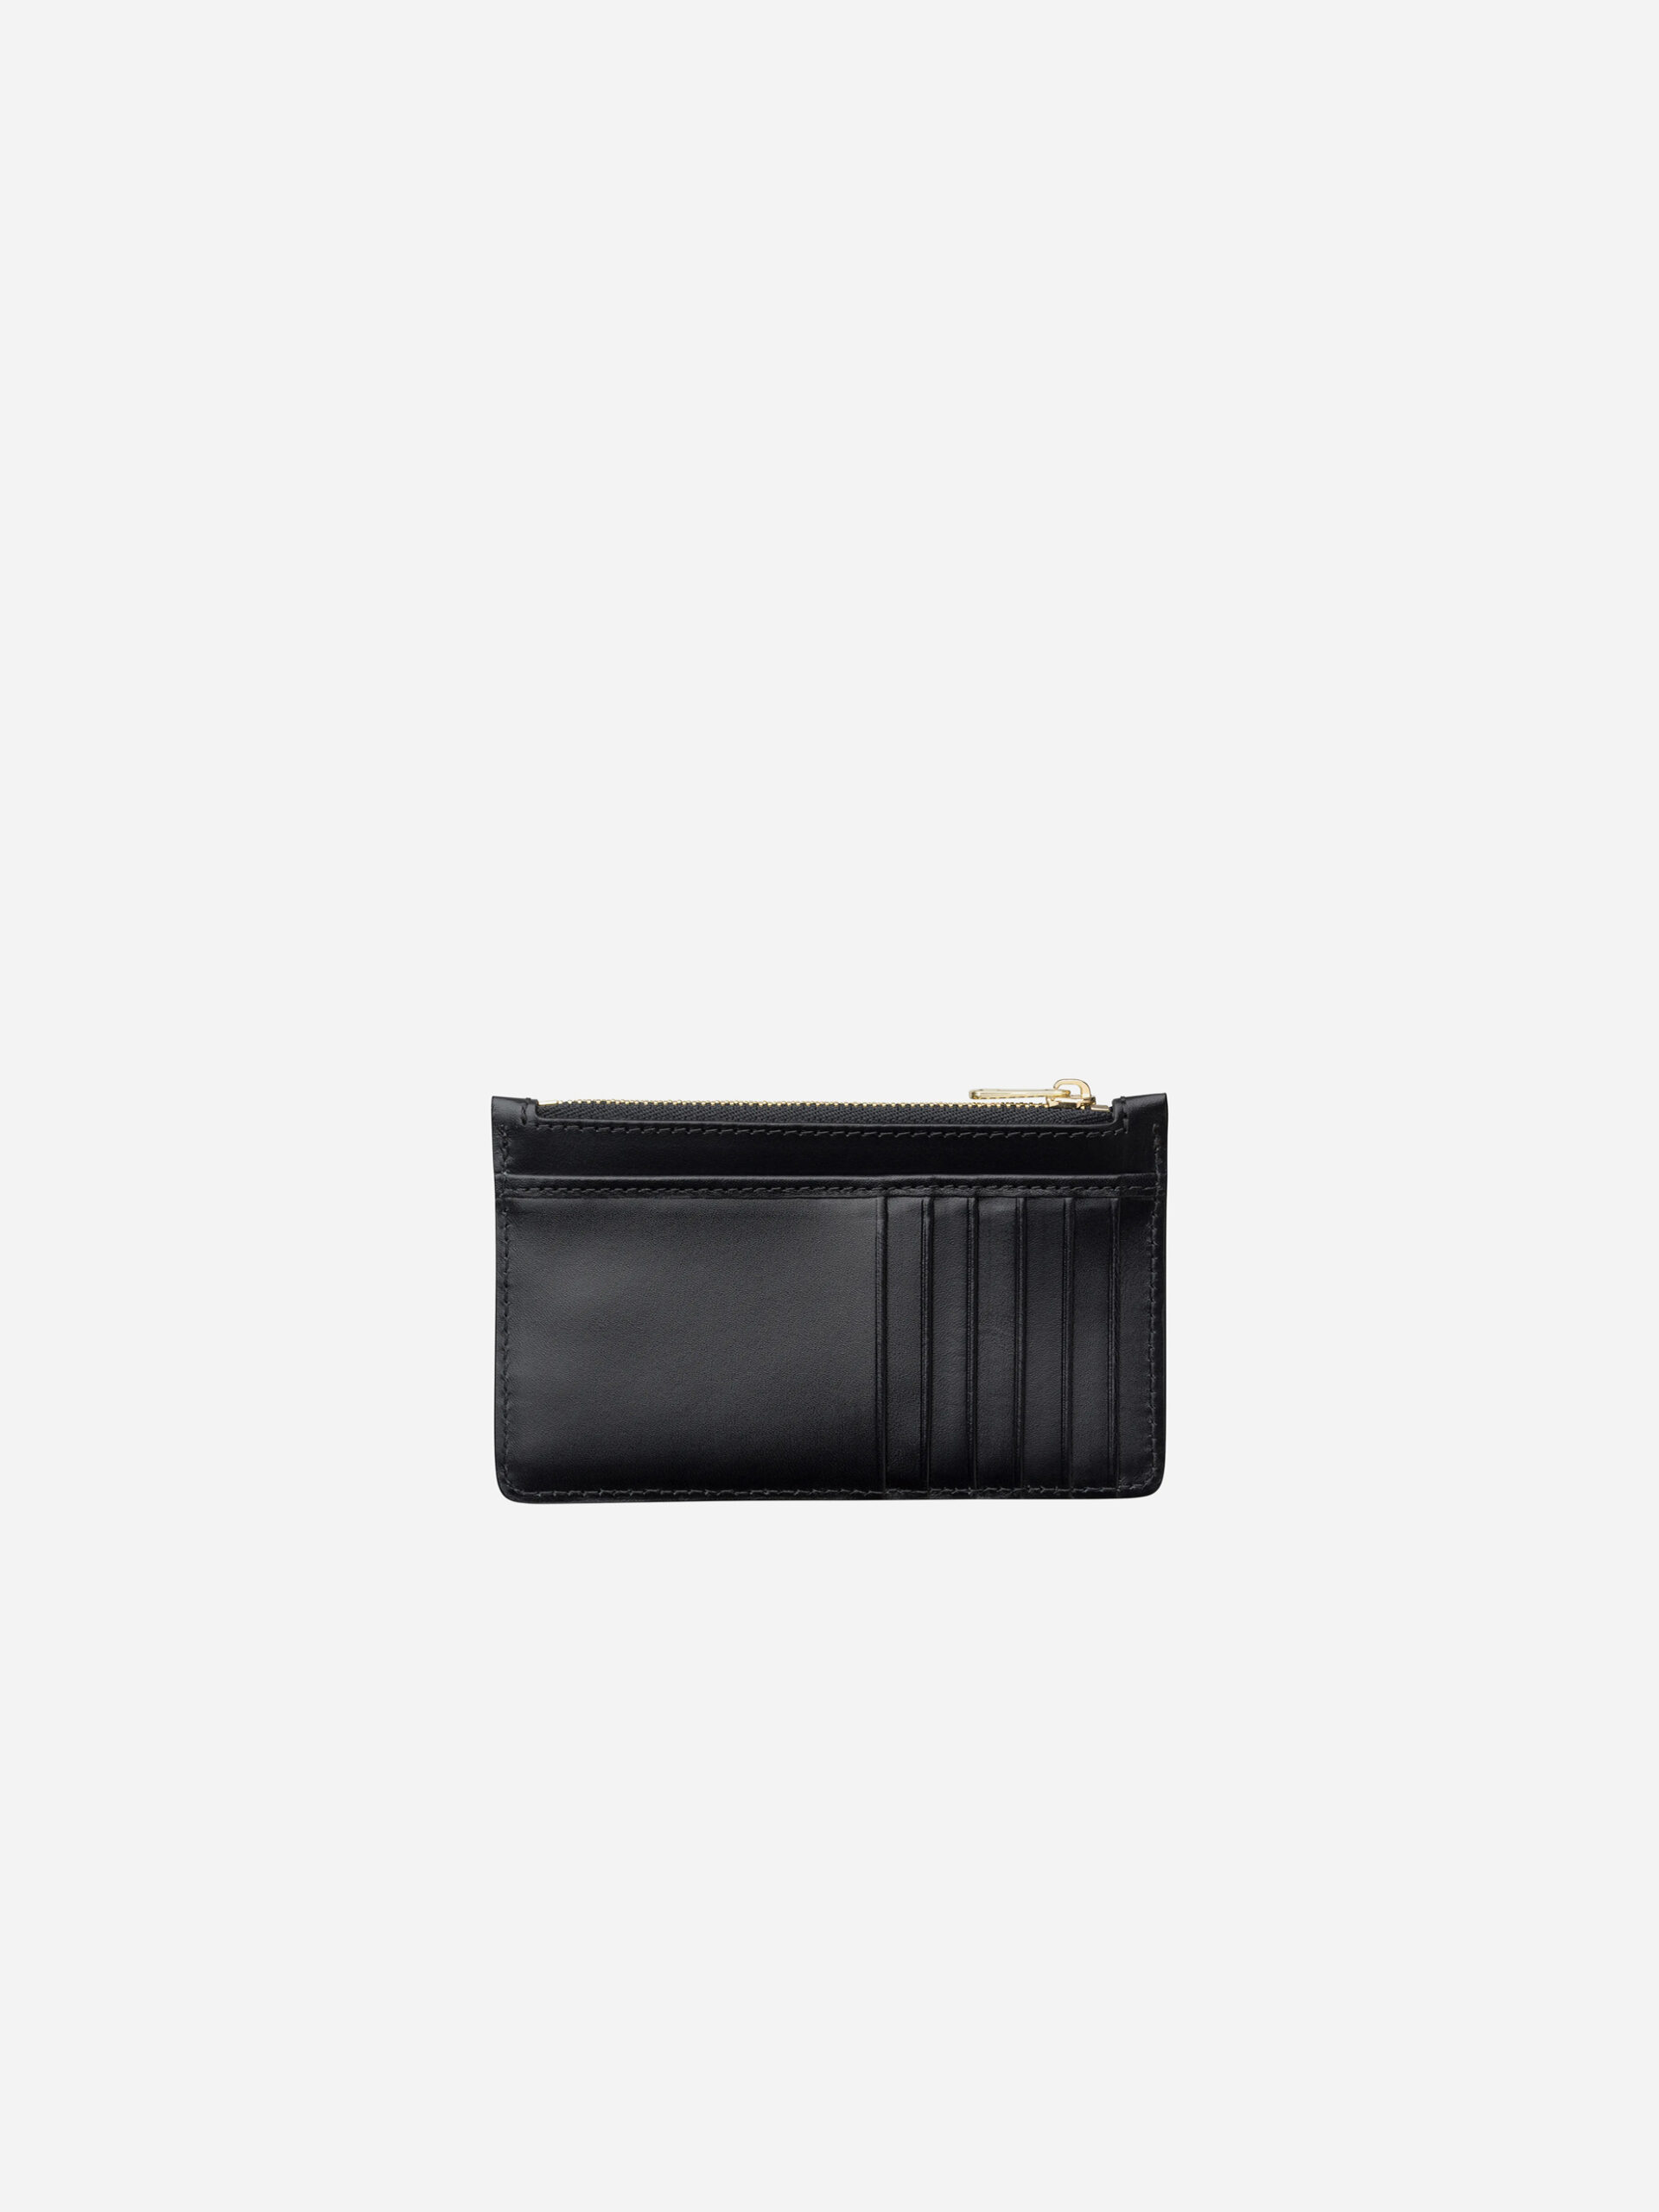 willow-black-leather-cardholder-wallet-a.p.c.-paris-matchboxathens